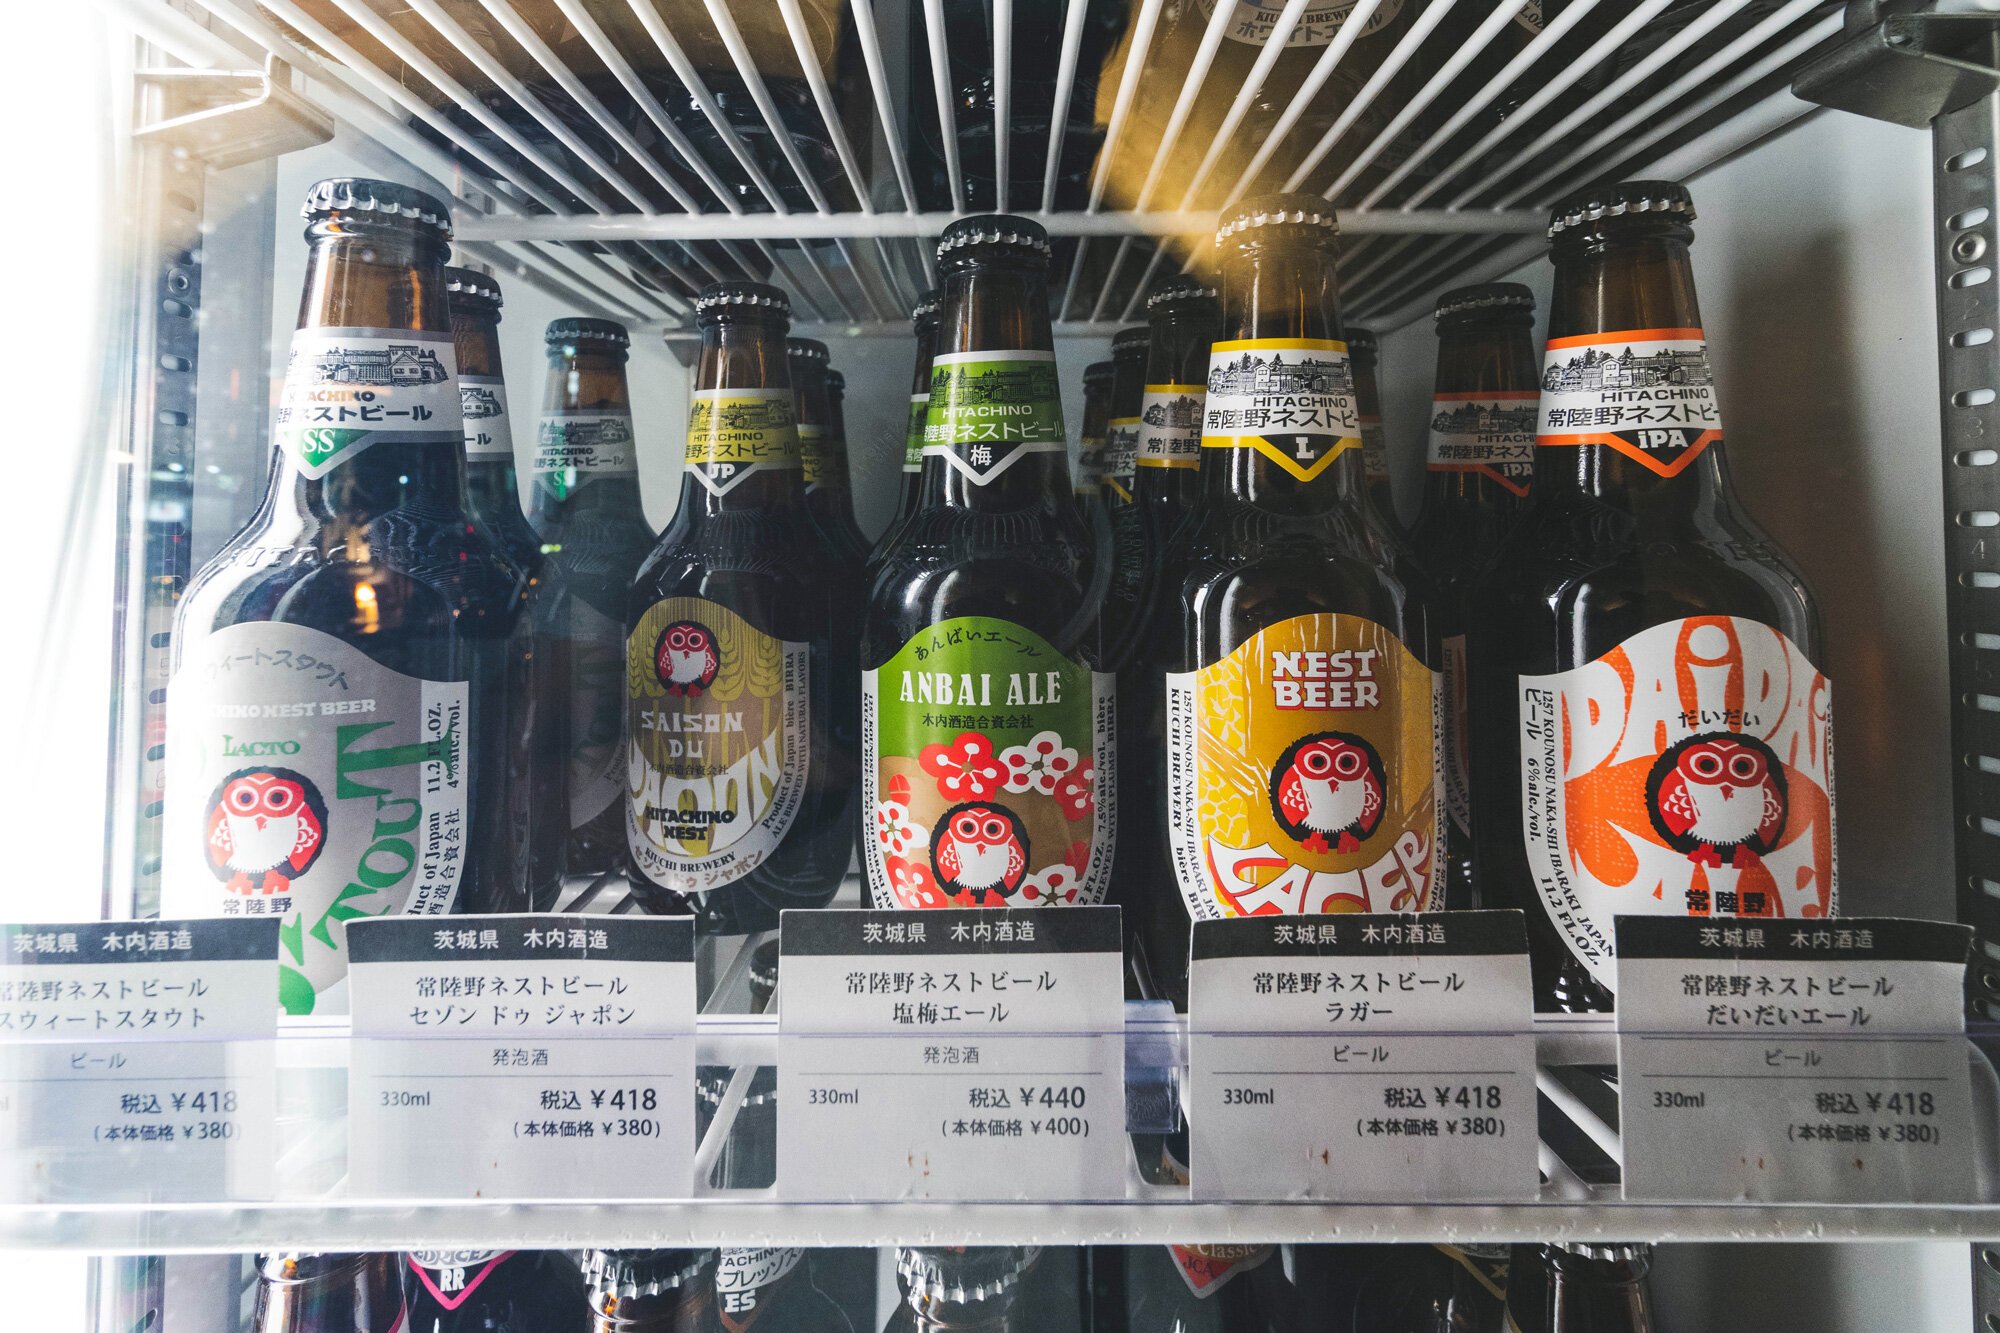 Hitachino Nest beer bottles